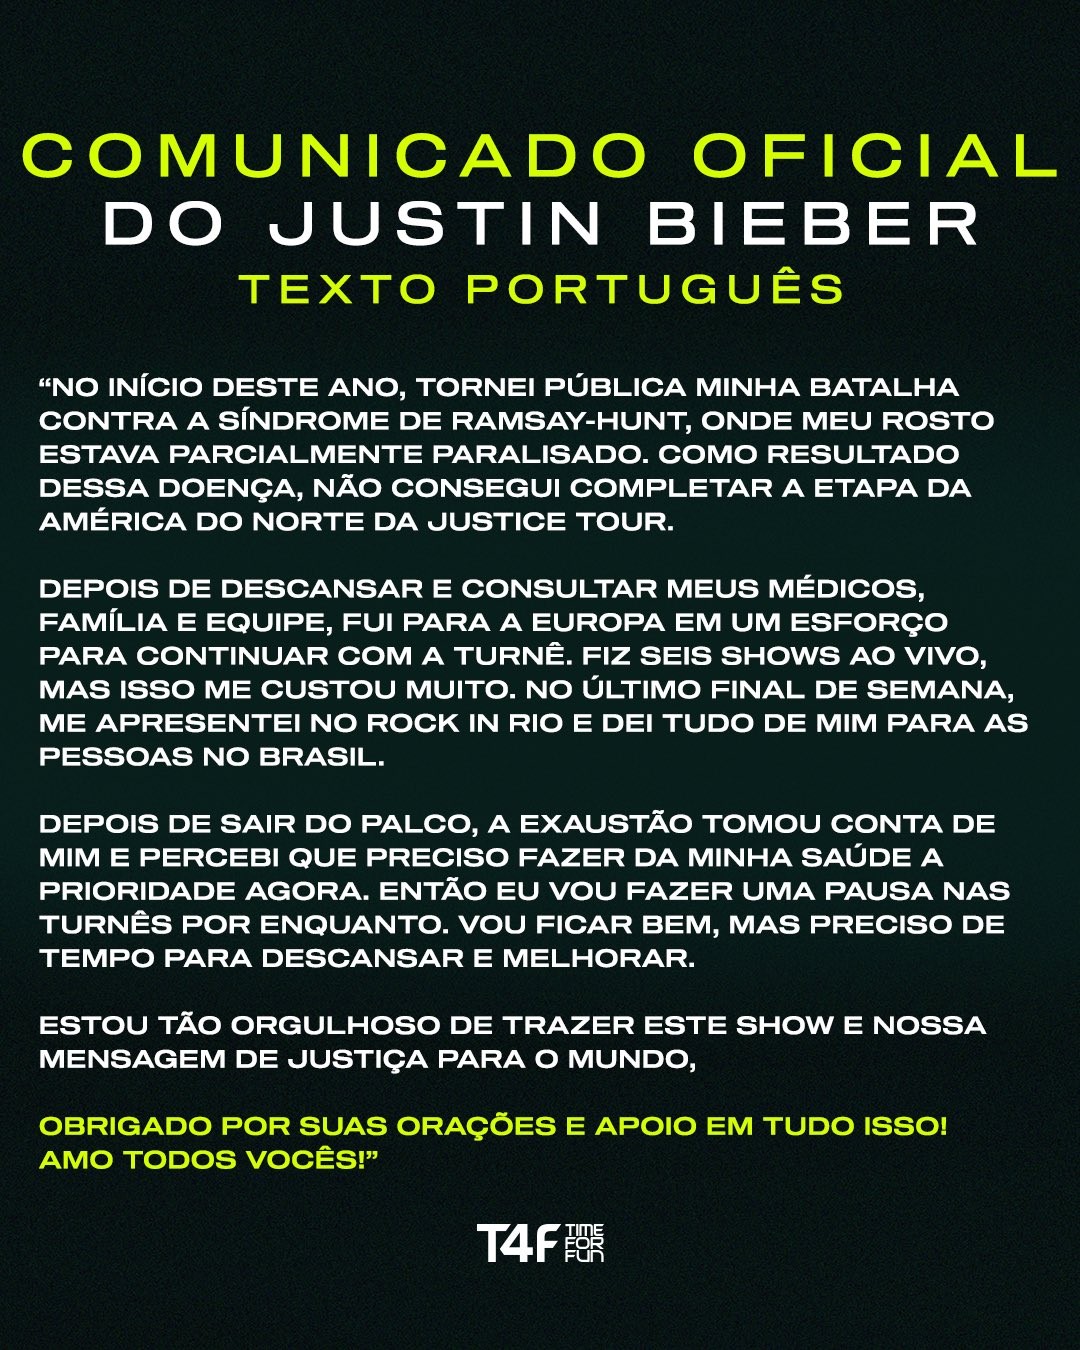 Empresa comunica cancelamento do show de Justin Bieber em São Paulo (Foto: Reprodução/ T4F)